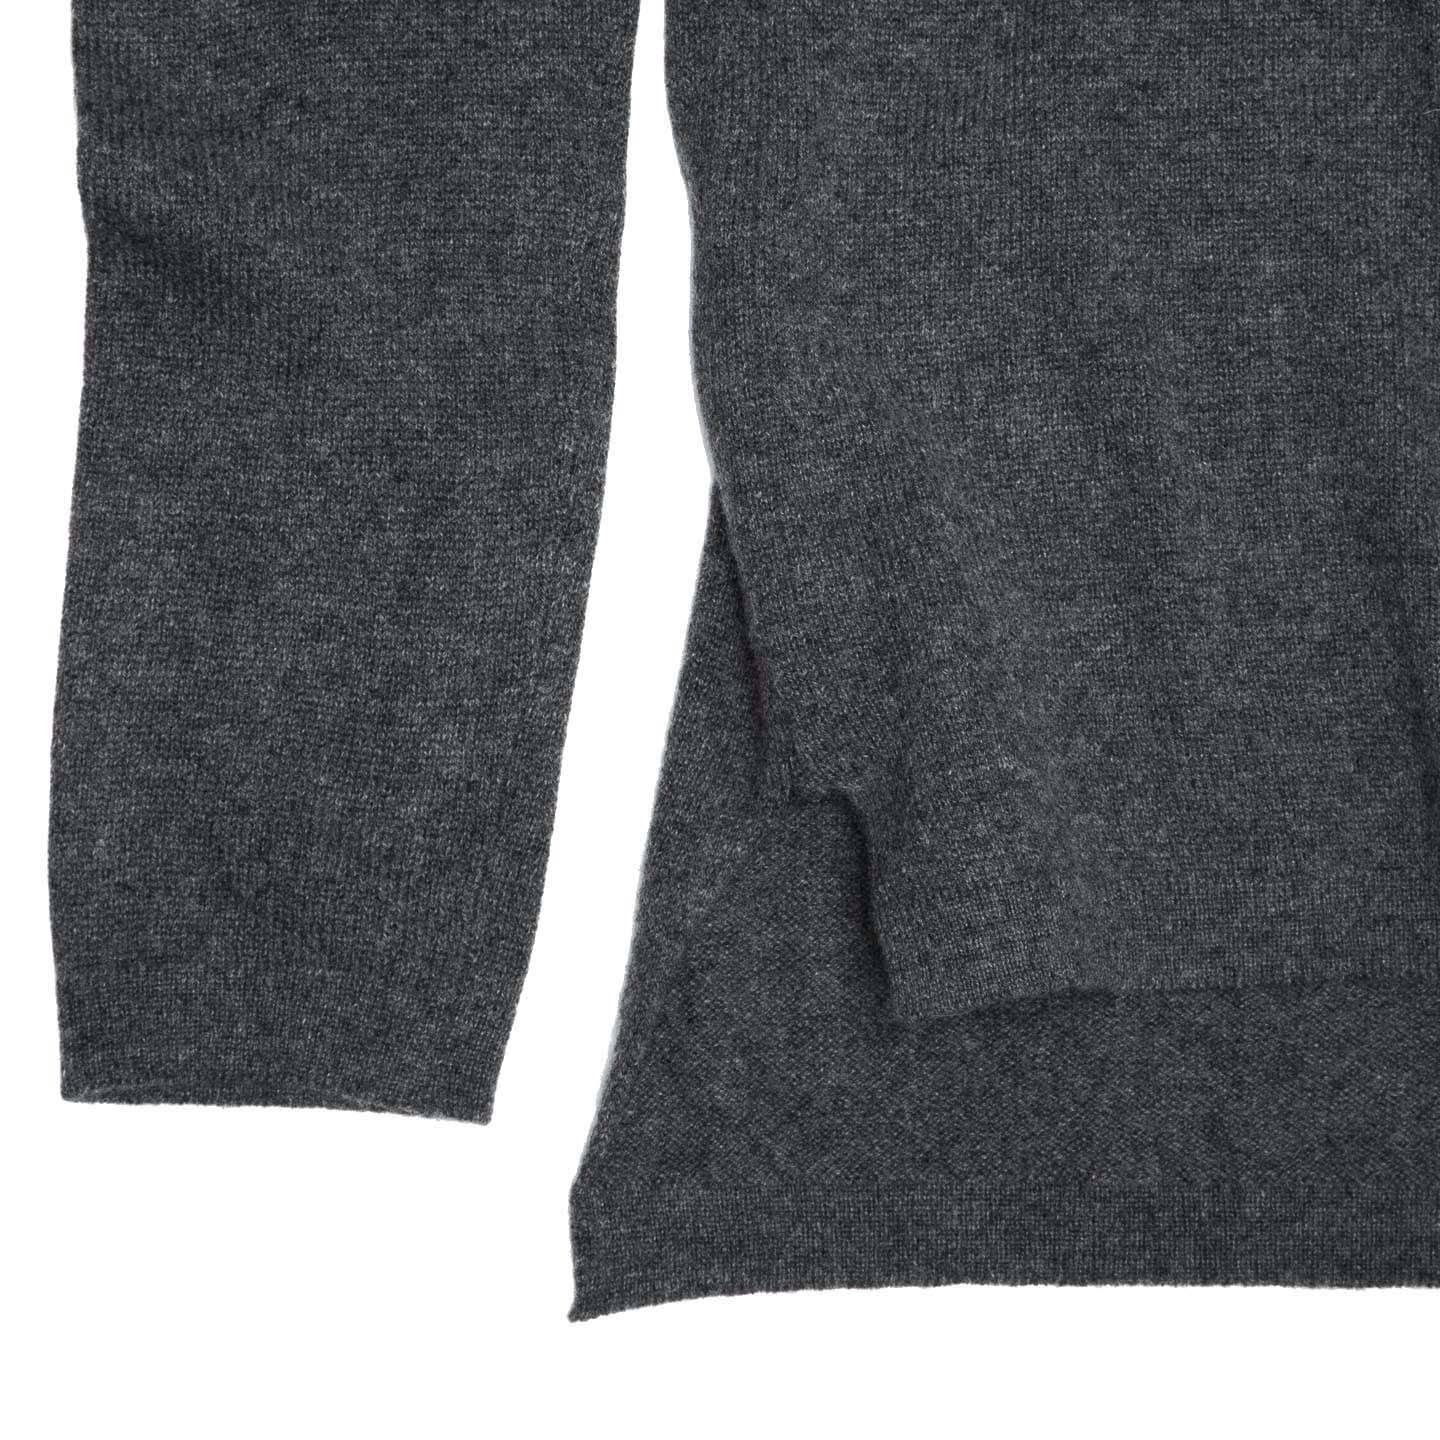 dark grey cashmere sweater